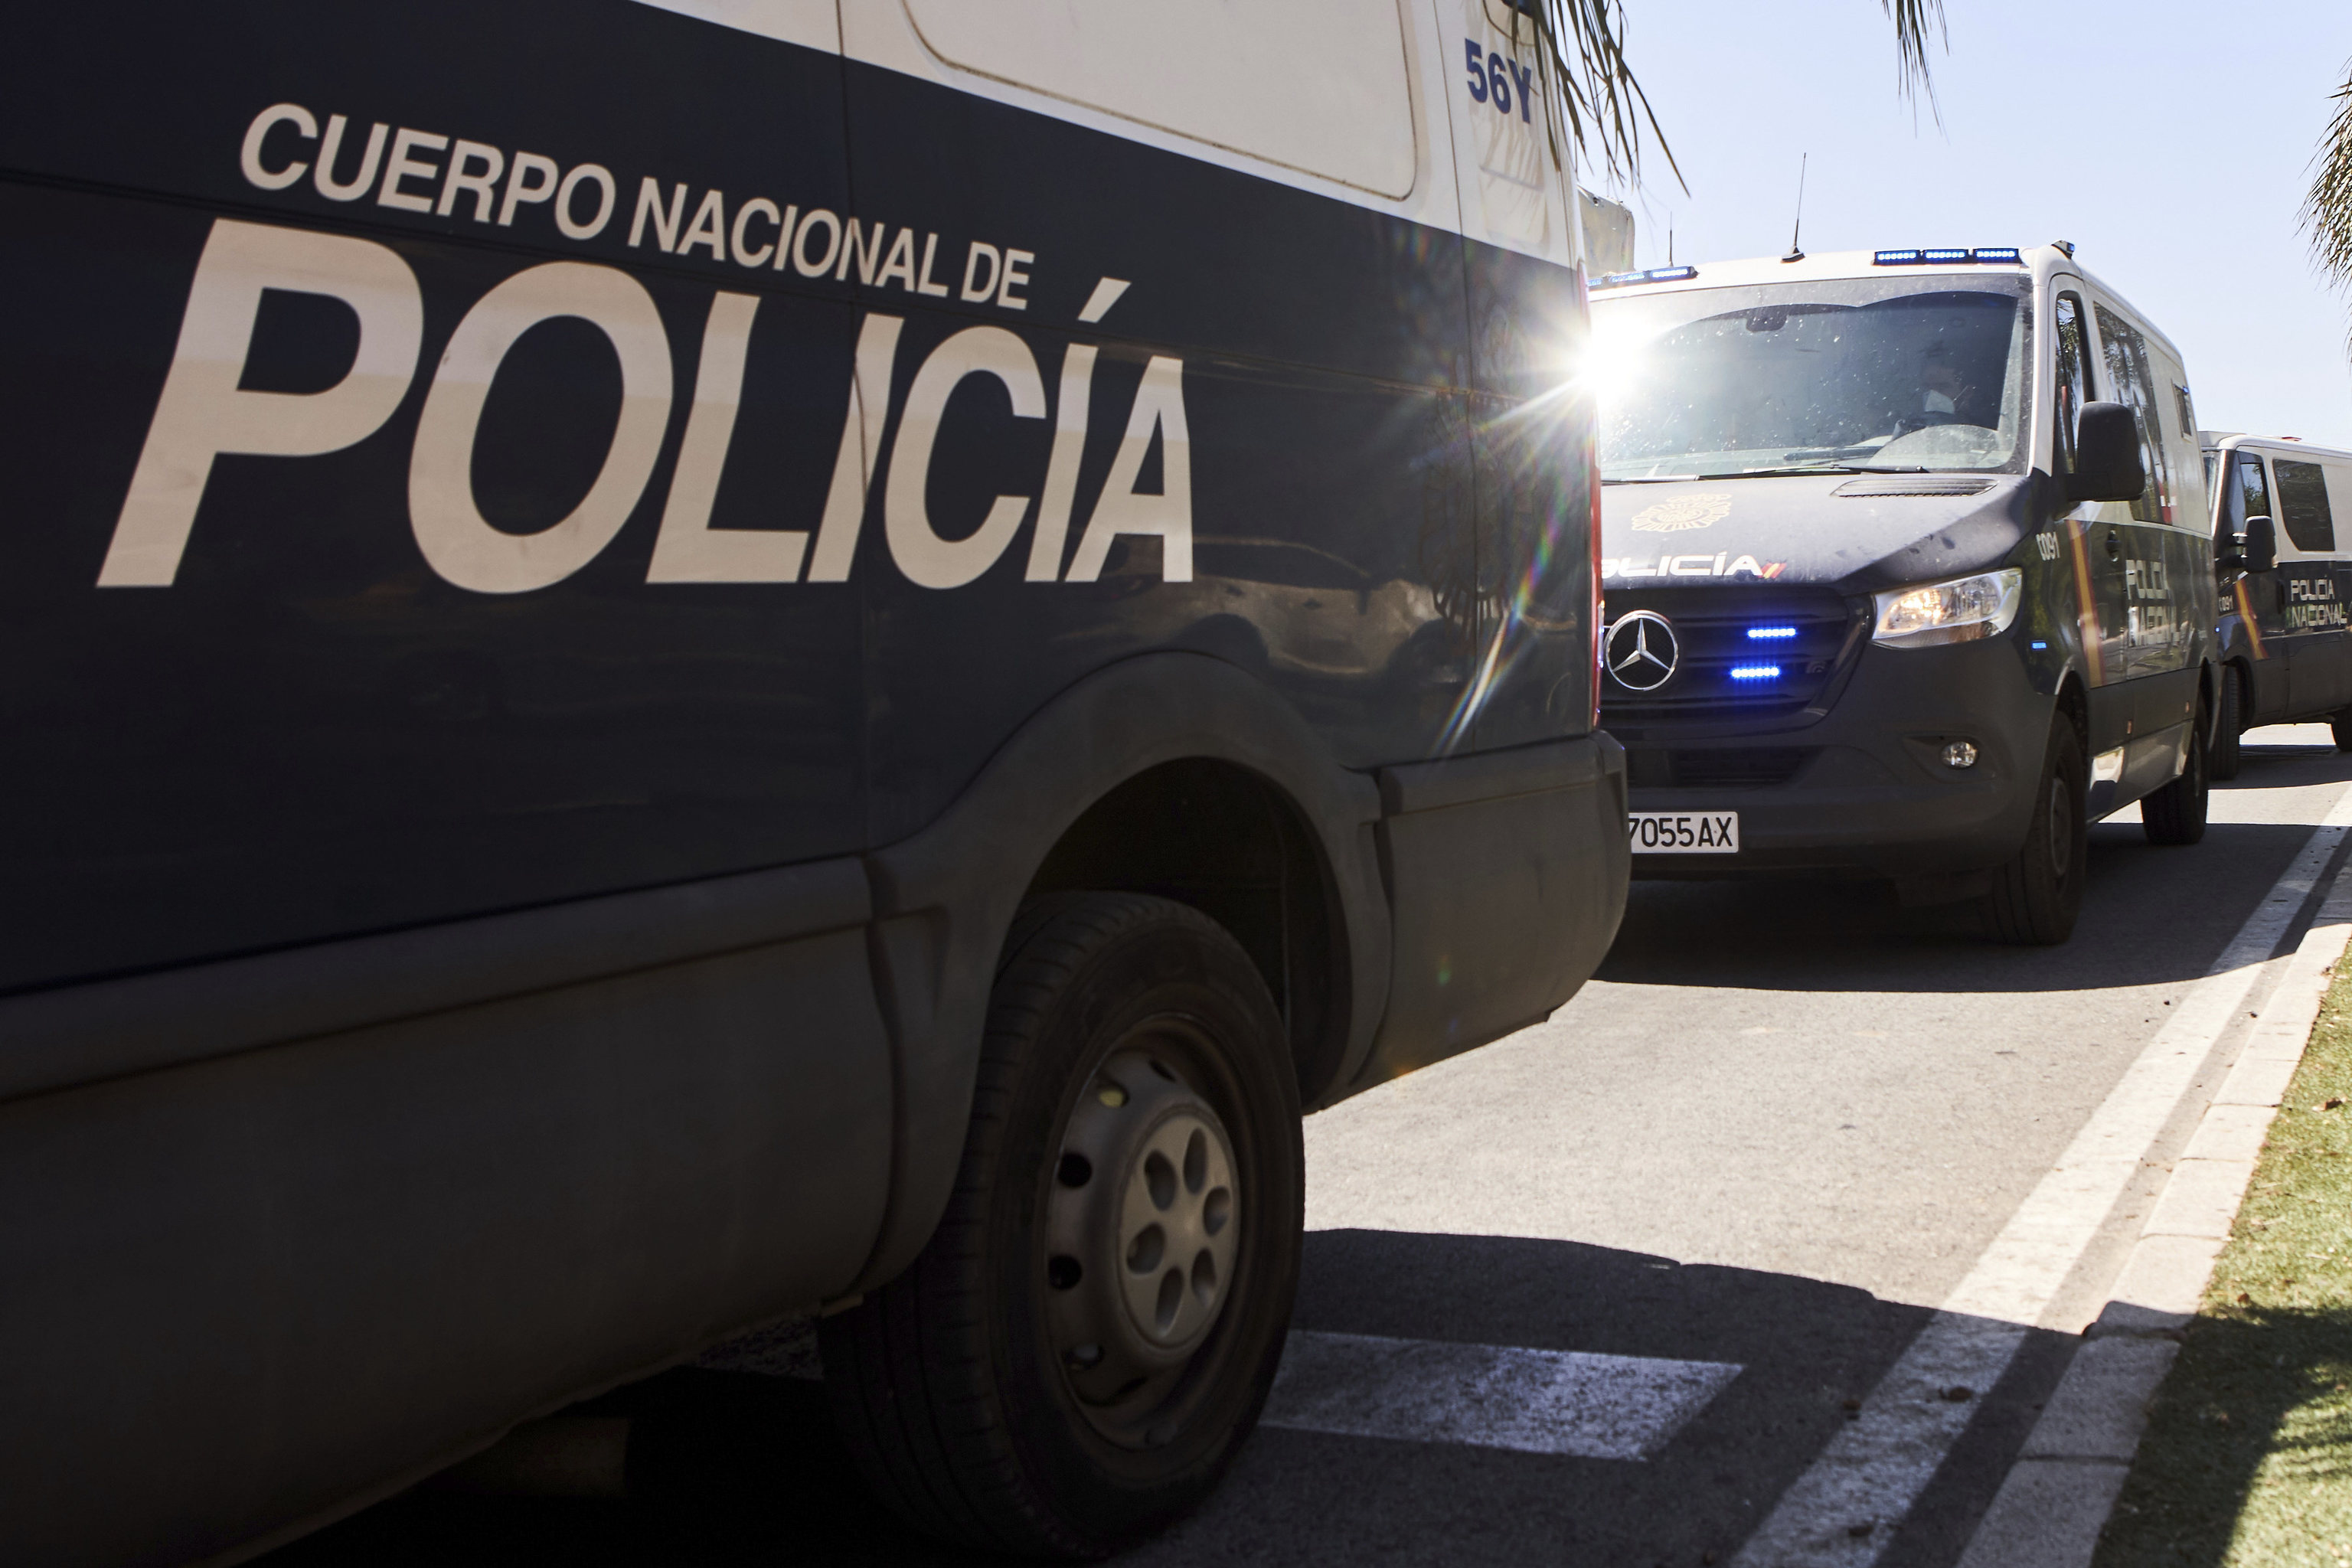 Furgones de la polica en Sevilla